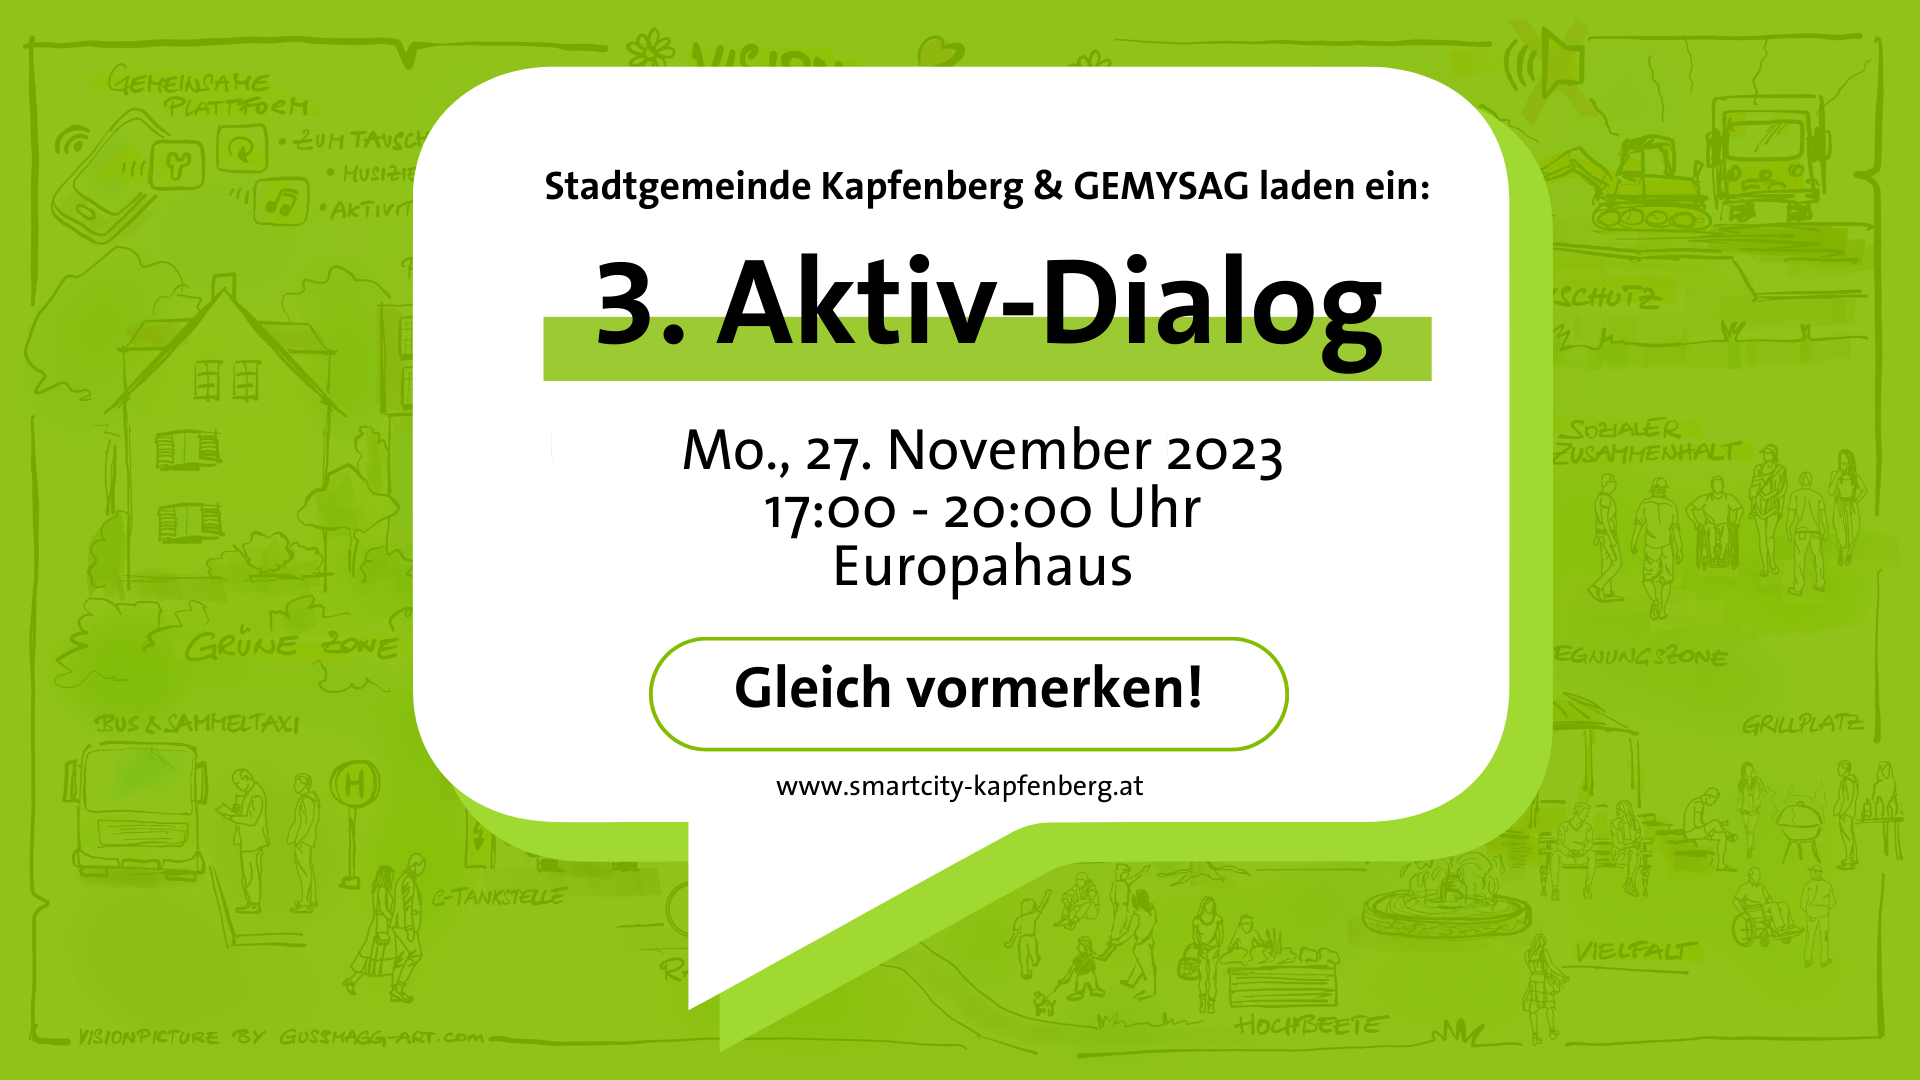 3. Aktiv-Dialog im Europahaus in der Hochschwabsiedlung am 27. November 2023 von 17 bis 20 Uhr